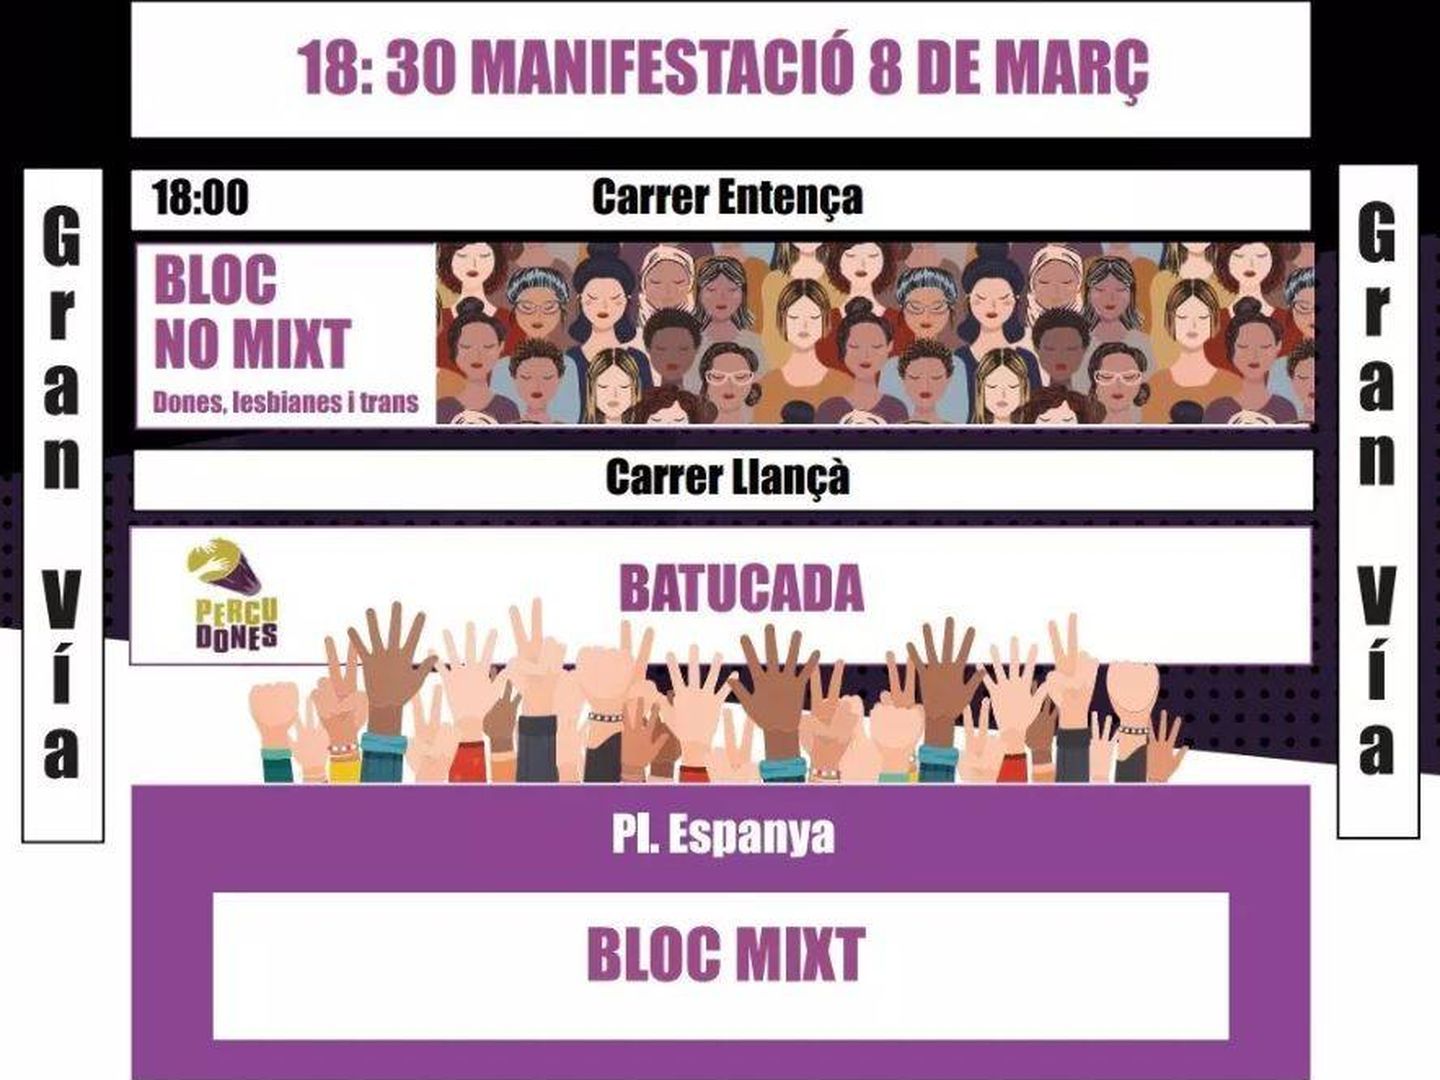 Organización de la manifestación de Barcelona (vagafeminista)